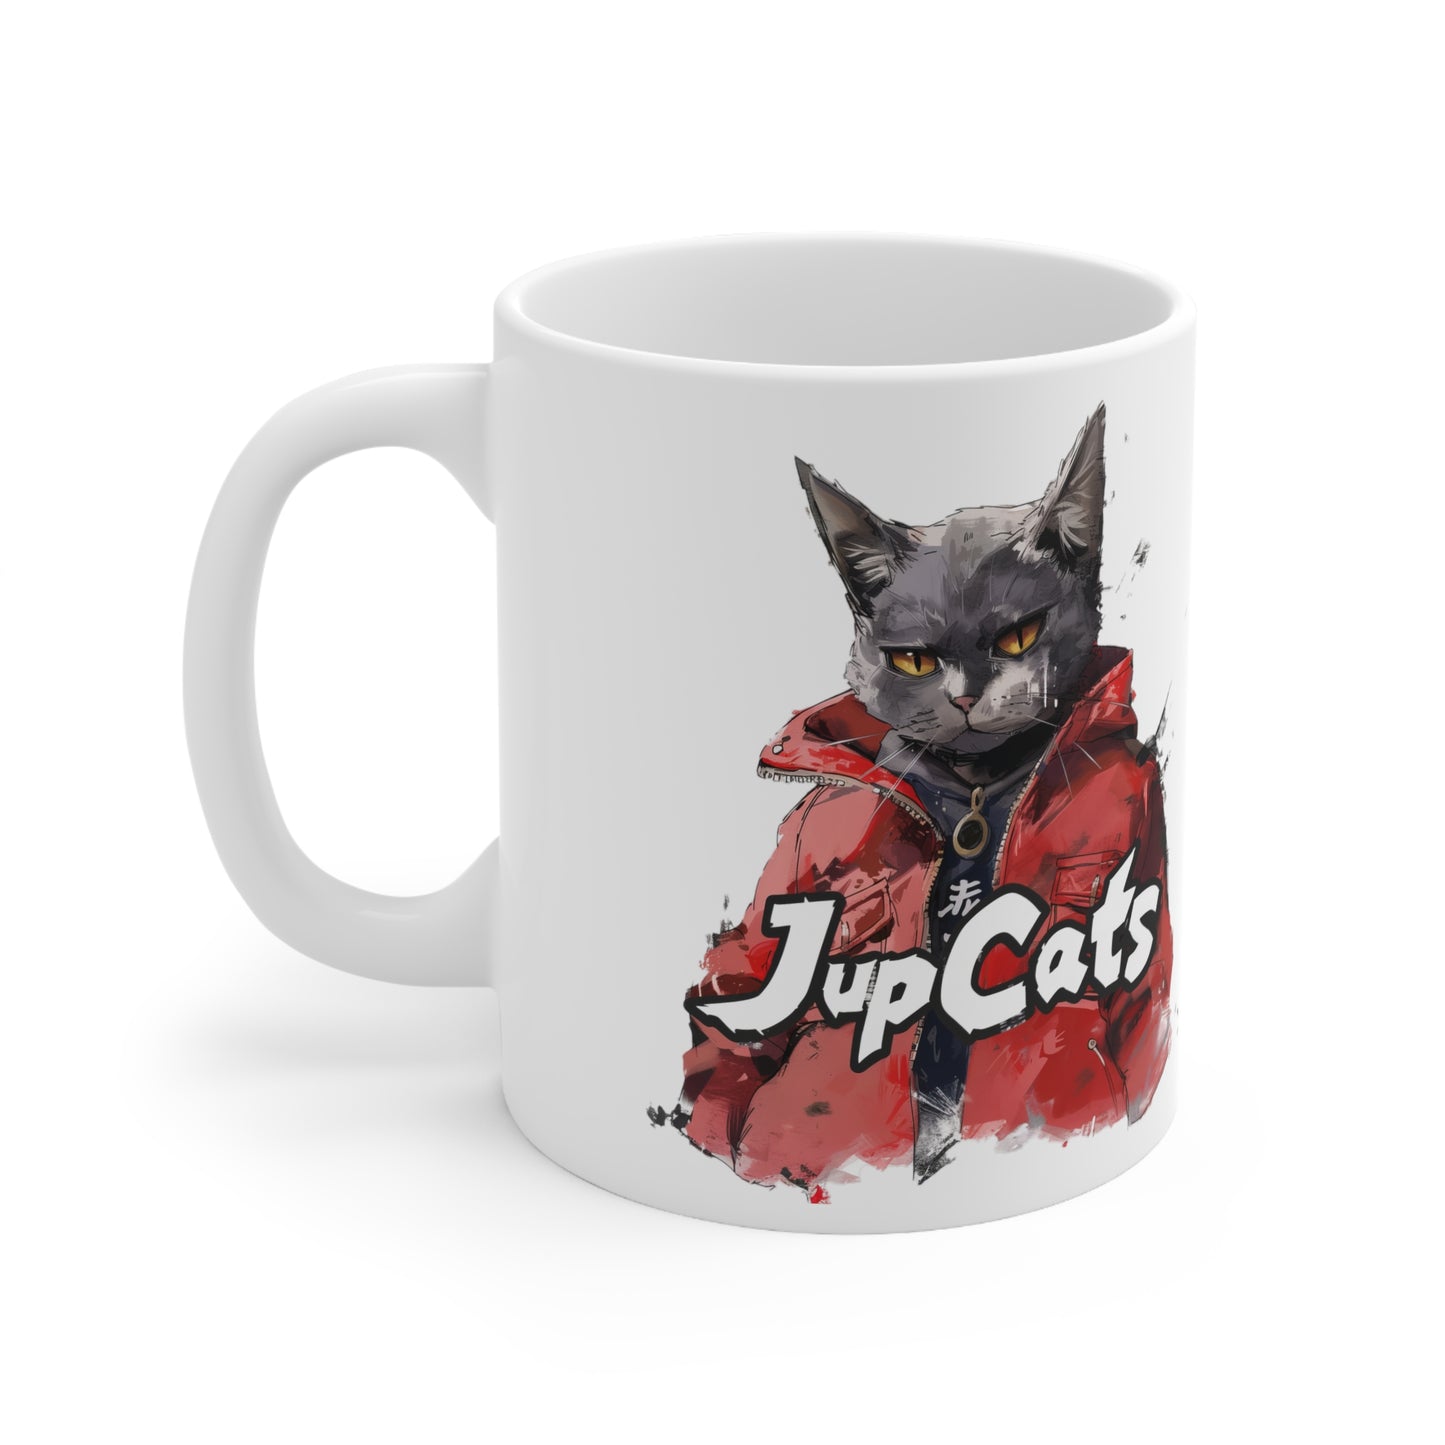 Jup Cat Mug